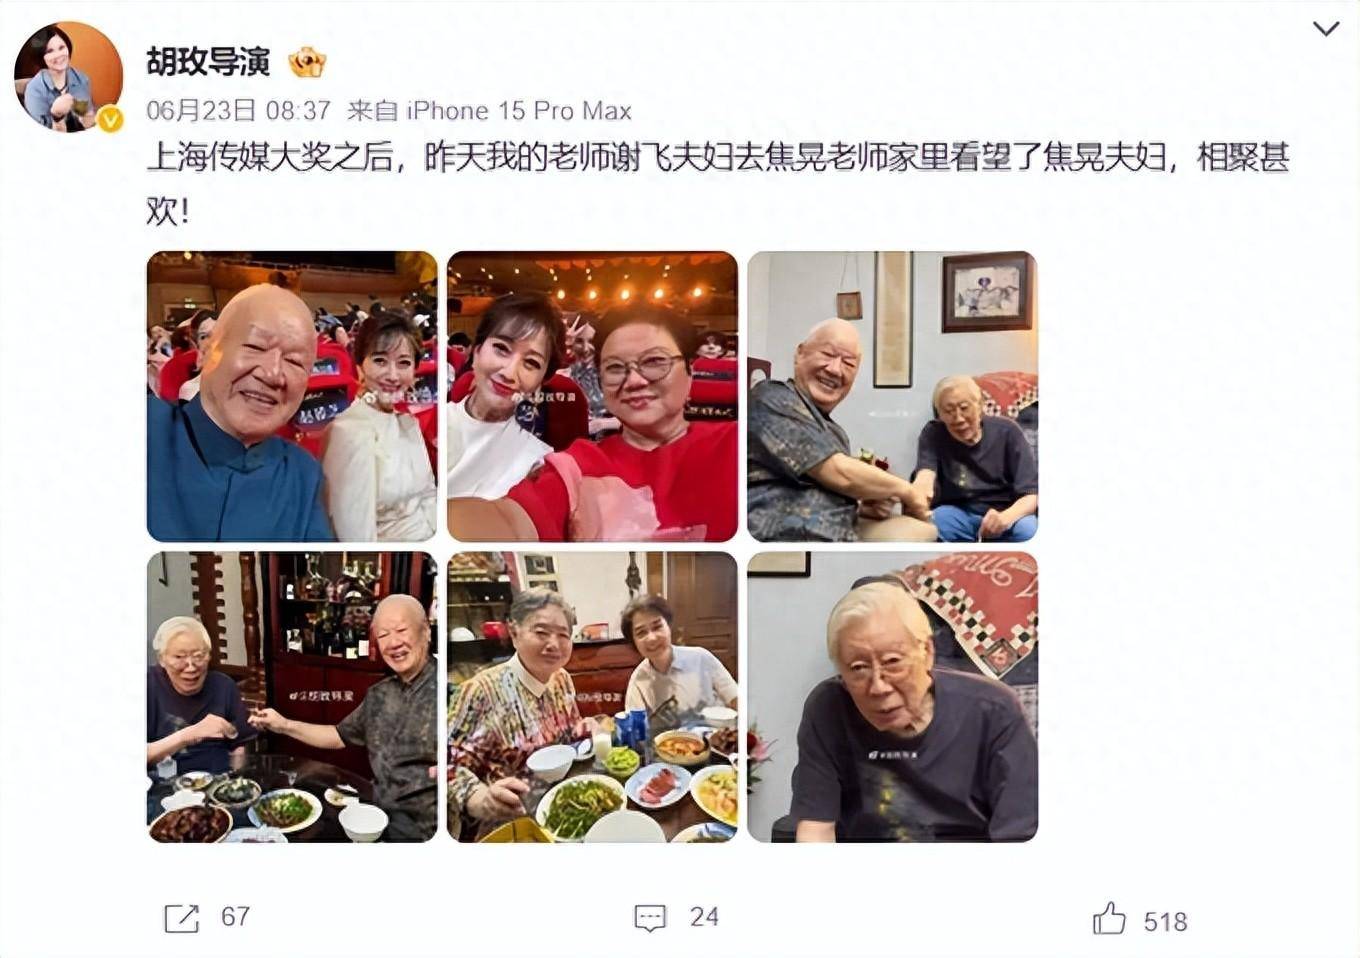 《汉武大帝》等经典电视剧的著名导演胡玫,在微博上发布了演员焦晃的